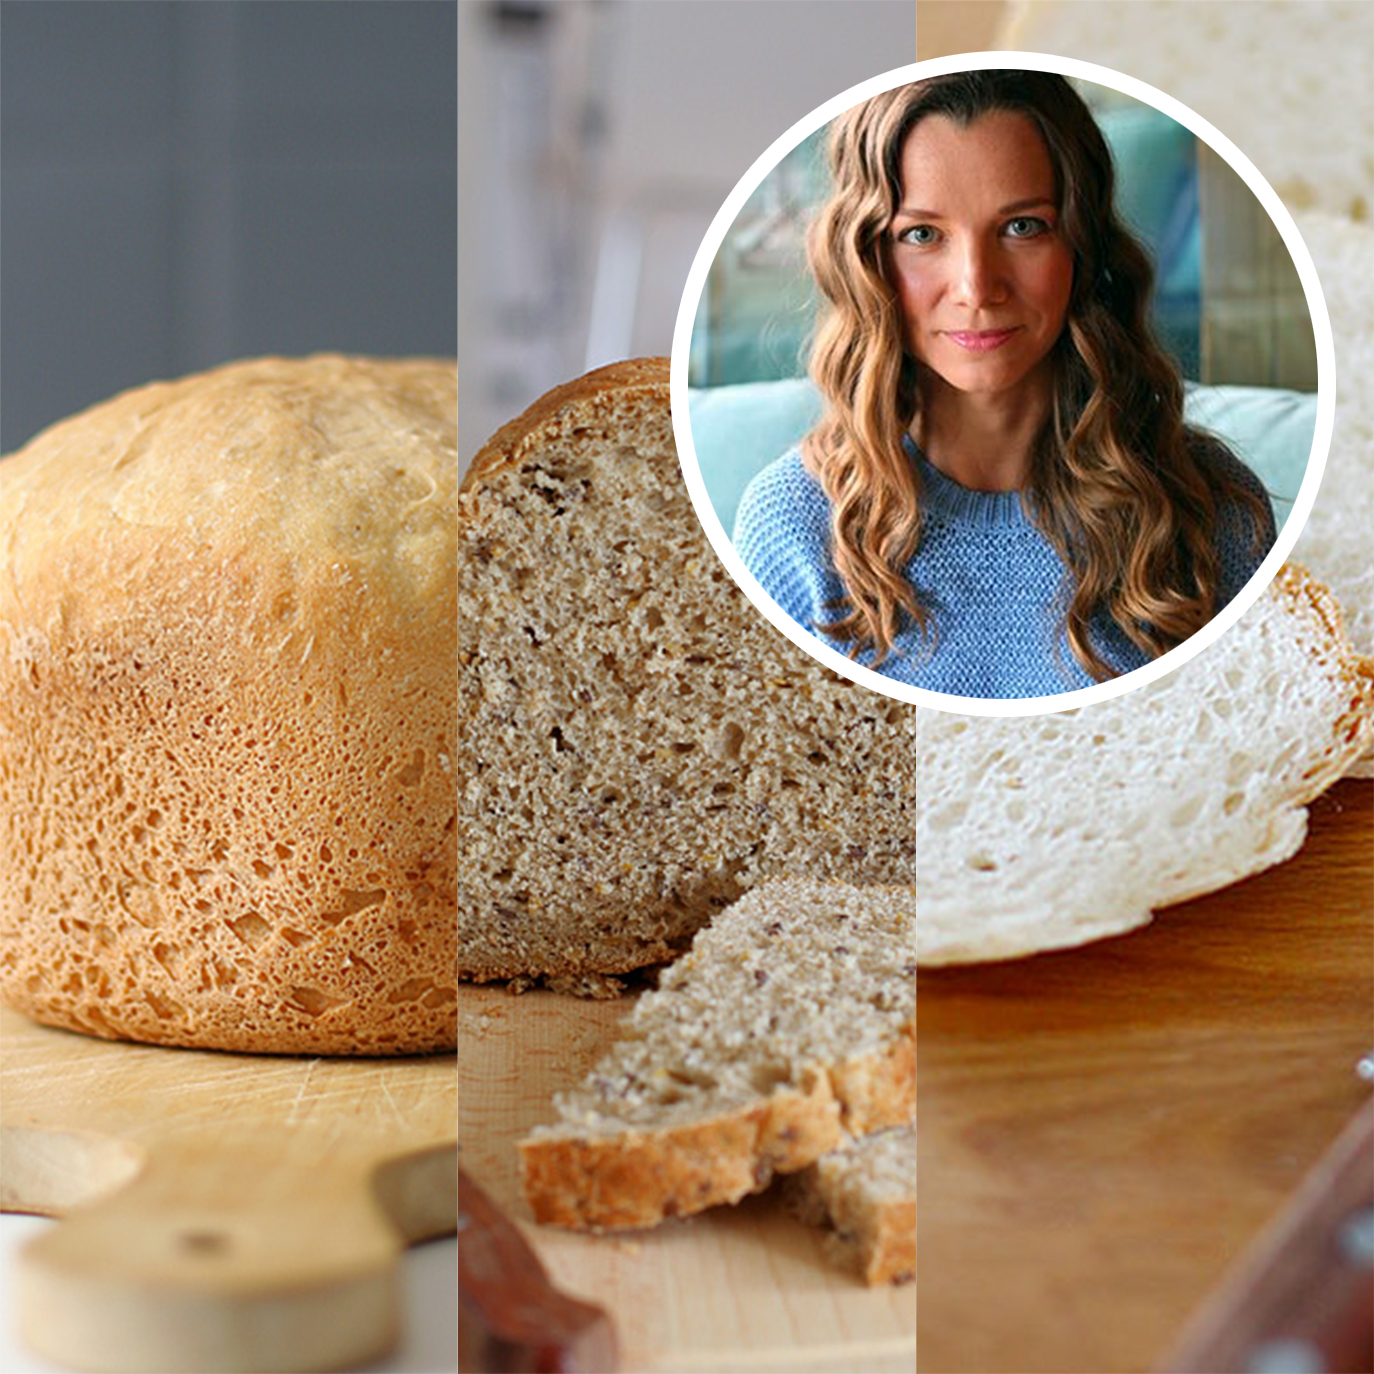 Французский хлеб с сыром и луком в хлебопечке | Рецепт | Хлебопечка, Хлеб, Хлеб из хлебопечки